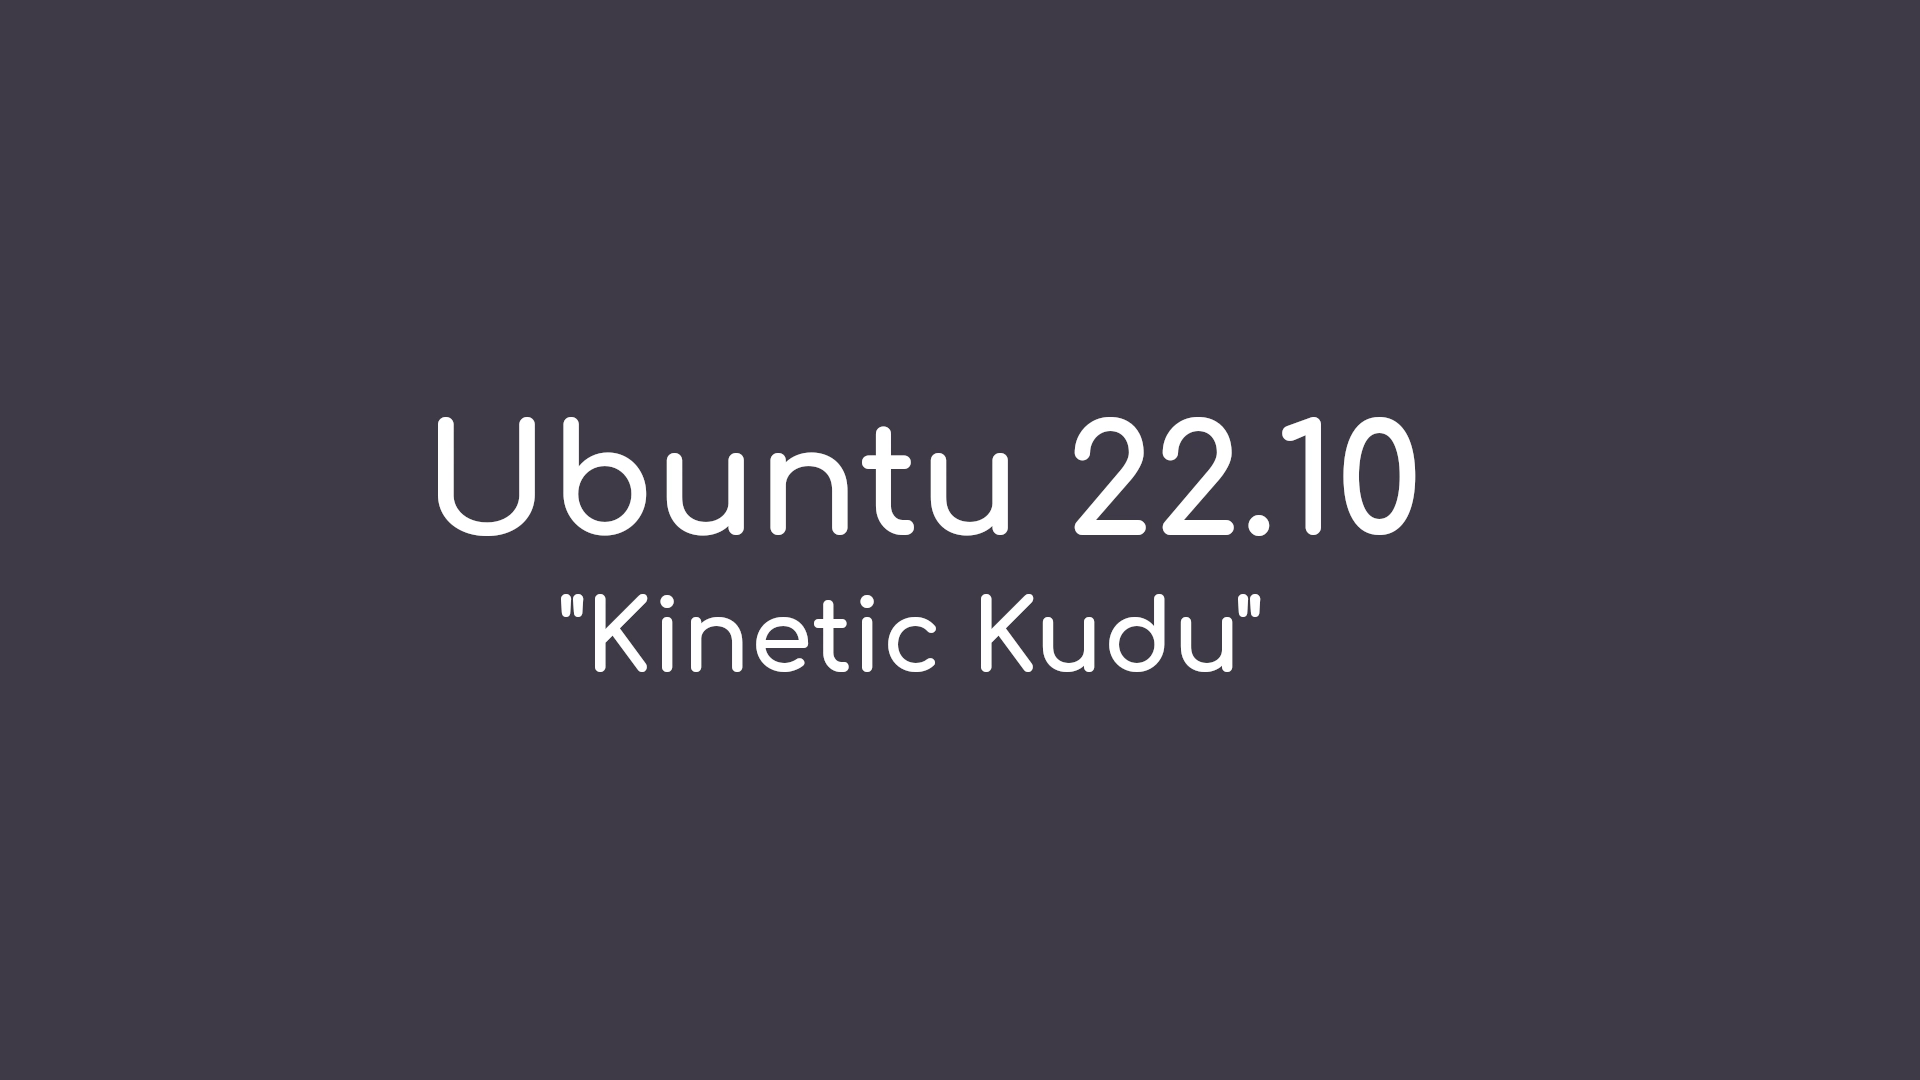 Ubuntu 22.10 “Kinetic Kudu” Is Slated for Release on October 20th, 2022